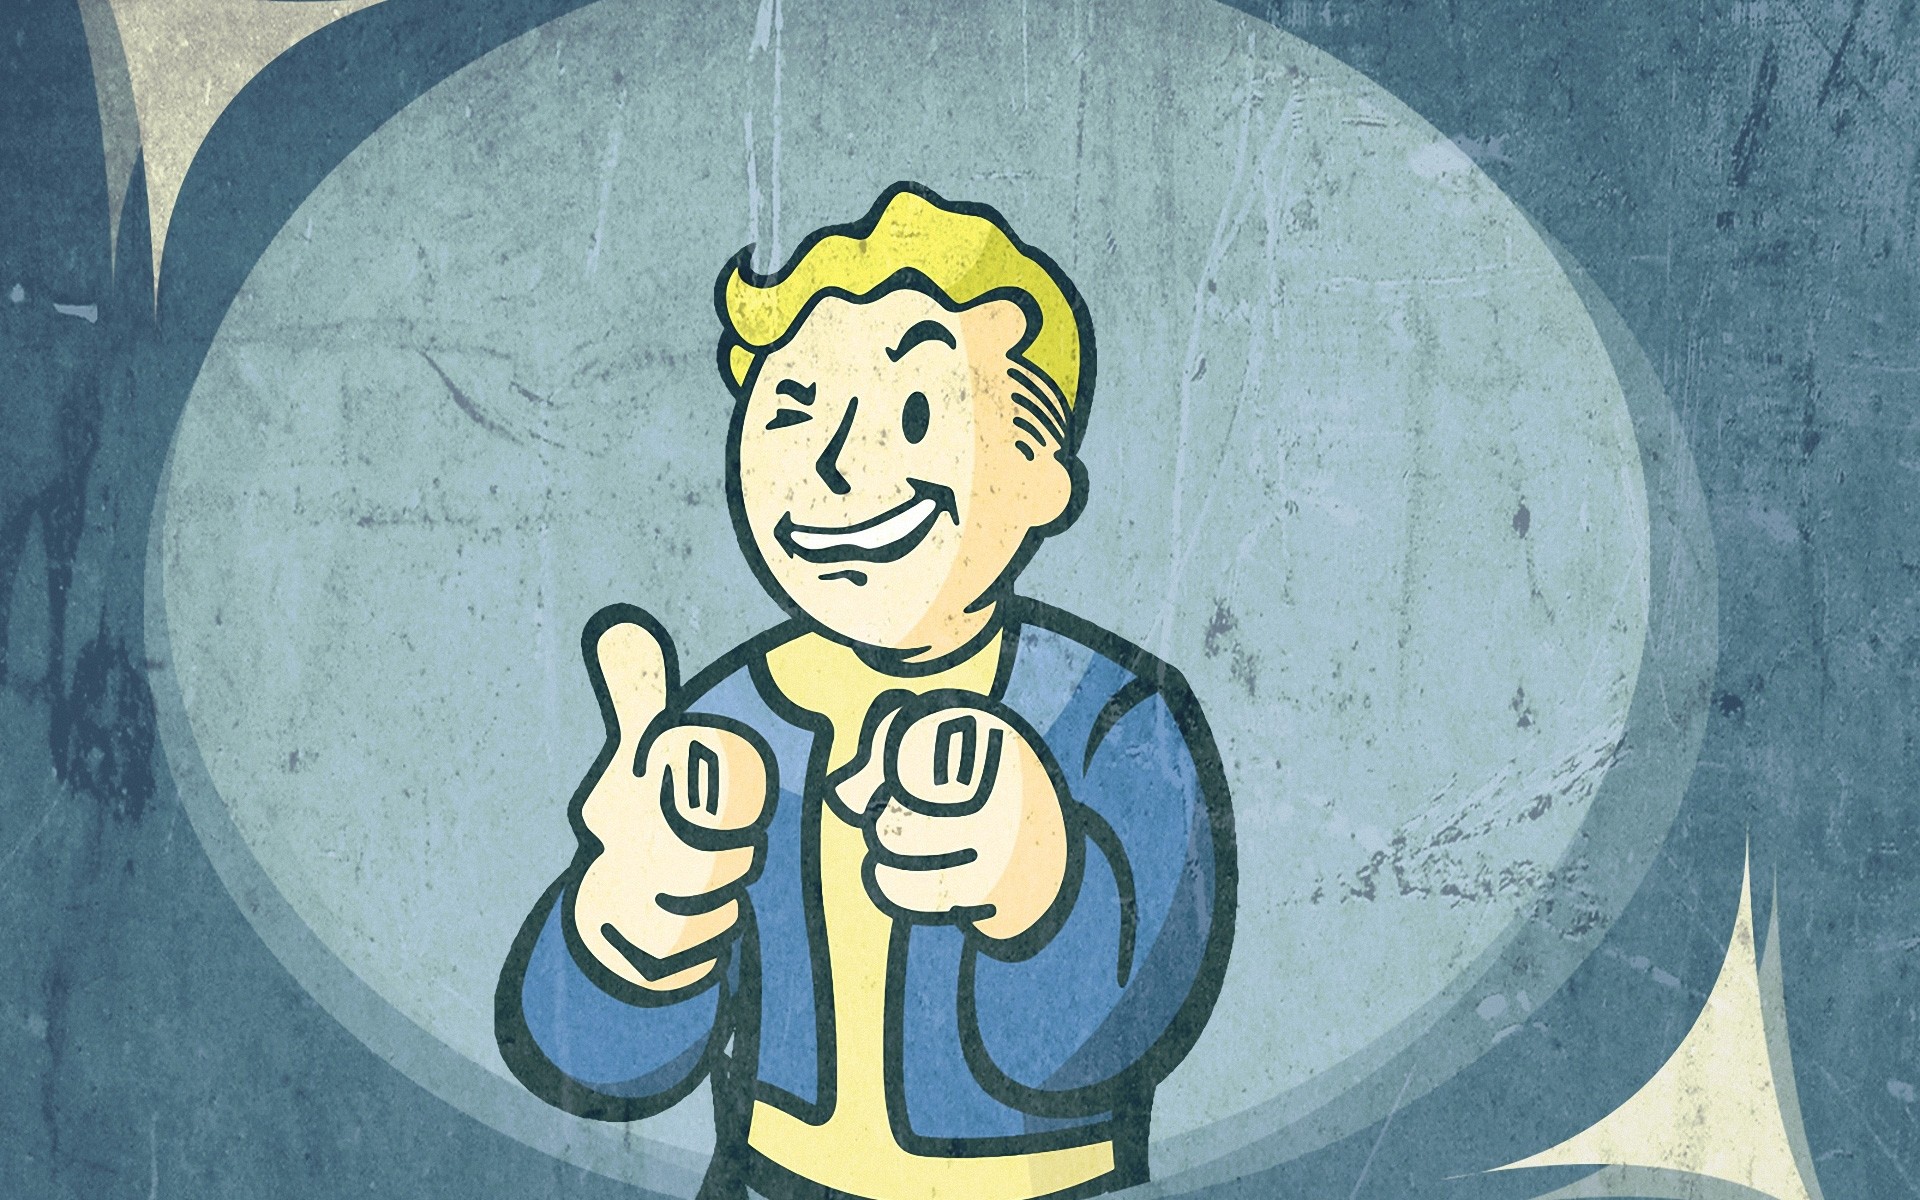 Fallout 3 Vault Boy Wallpaper Pc Game Wallpaper Game Fallout 3 Vault Boy Hd Wallpaper Backgrounds Download